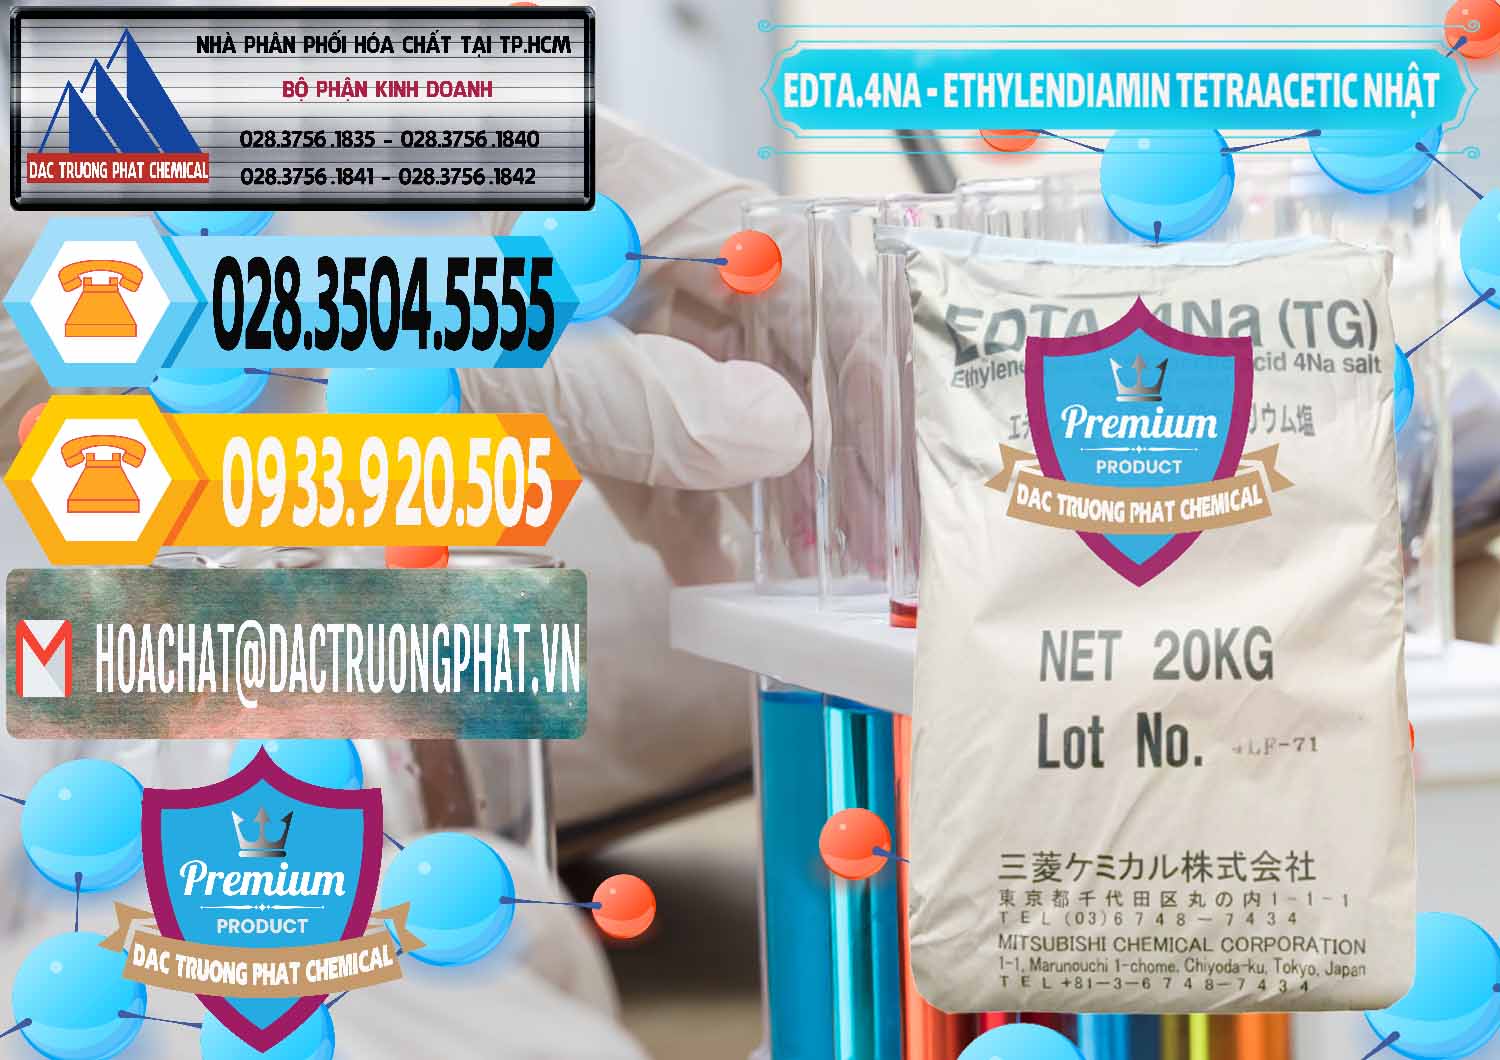 Chuyên bán & cung ứng EDTA 4Na - Ethylendiamin Tetraacetic Nhật Bản Japan - 0482 - Nơi chuyên bán & cung cấp hóa chất tại TP.HCM - hoachattayrua.net